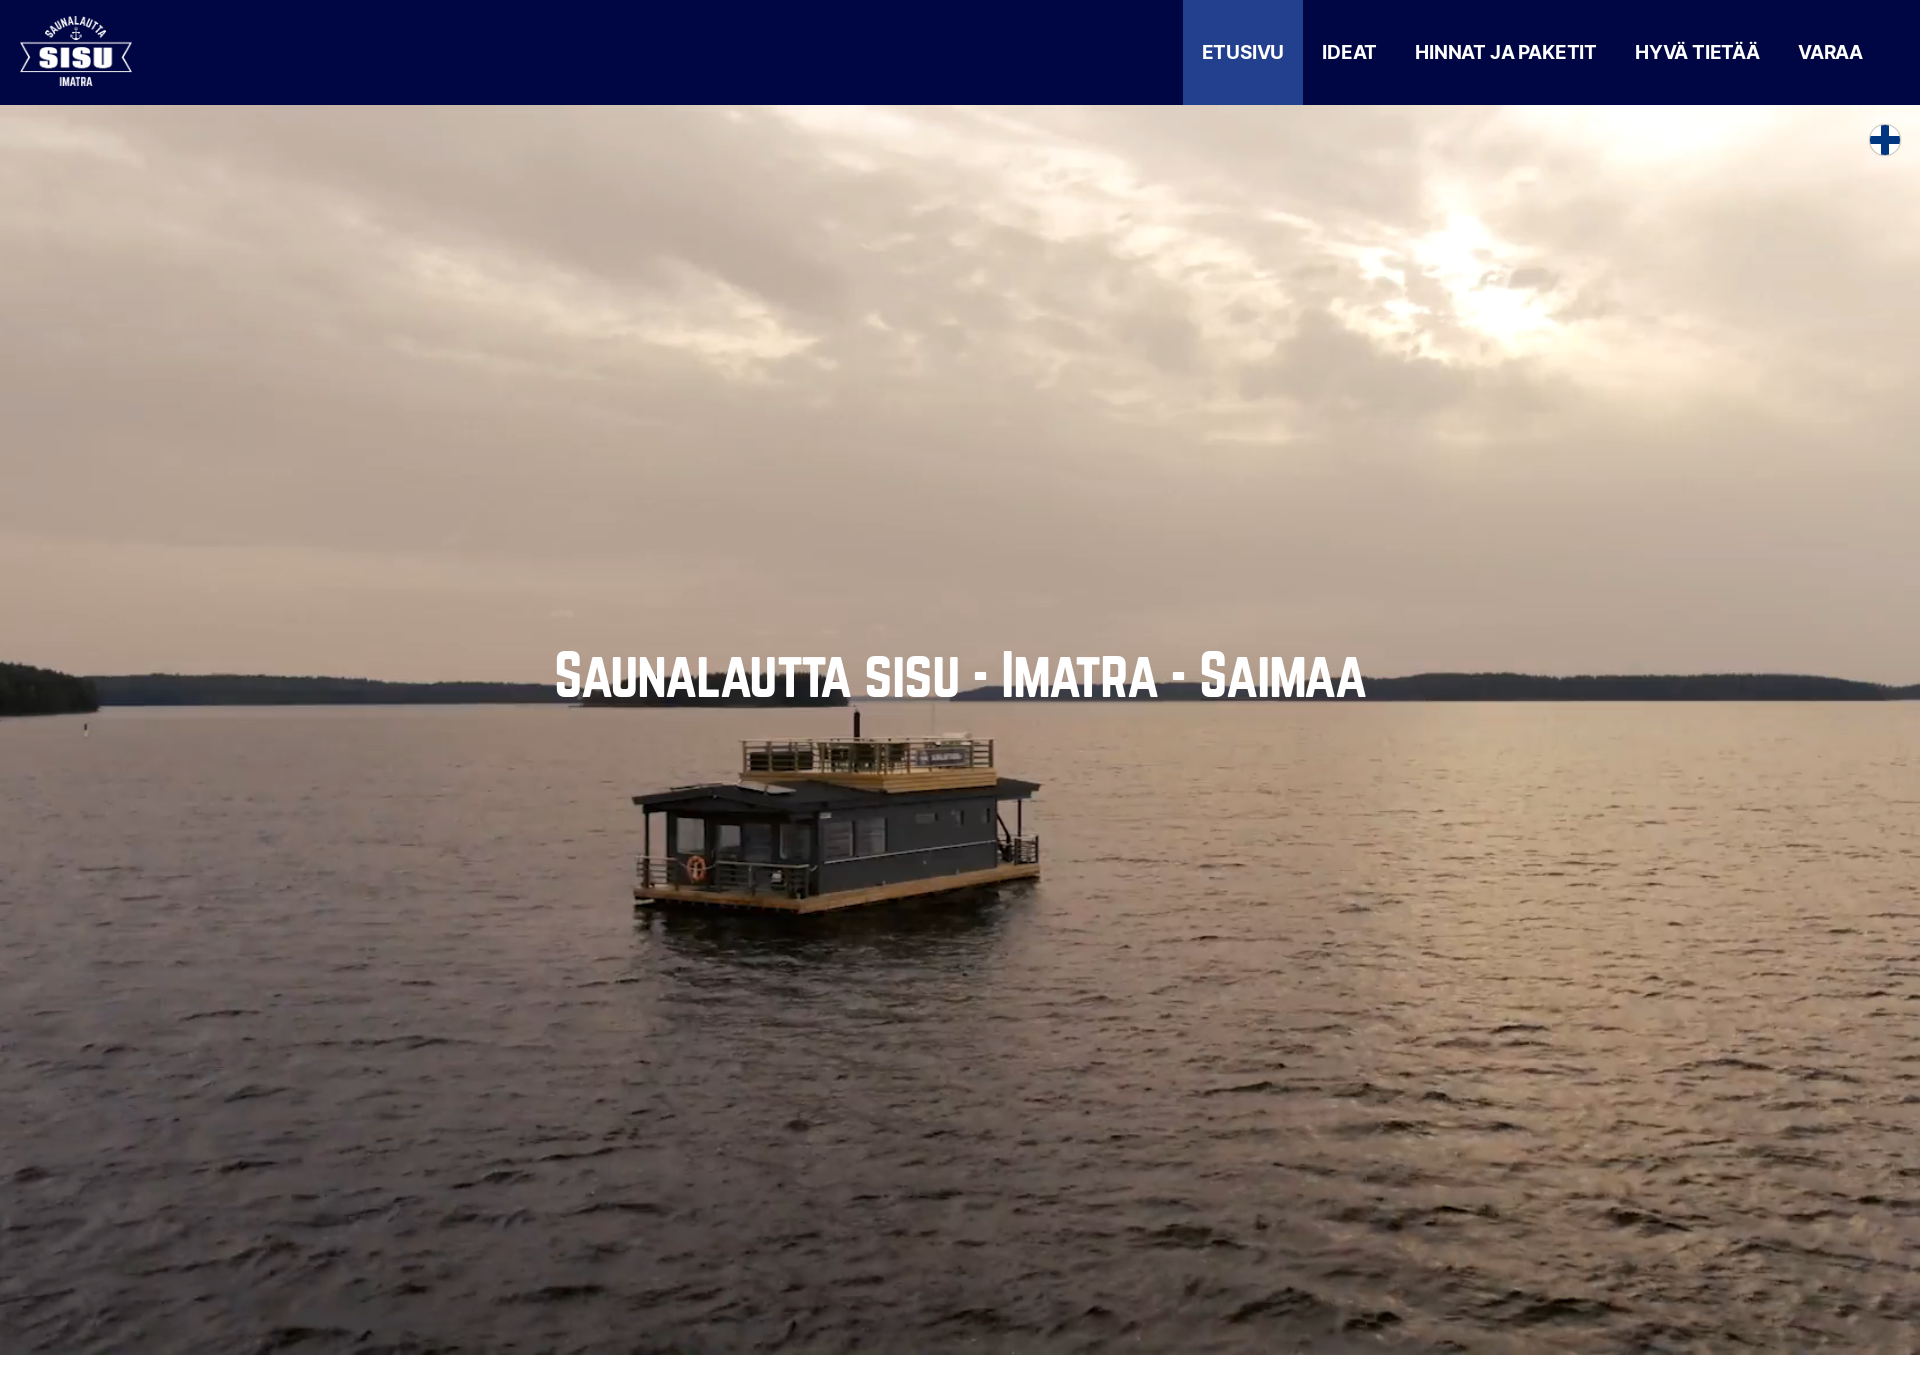 Screenshot for imatransaunalautta.fi